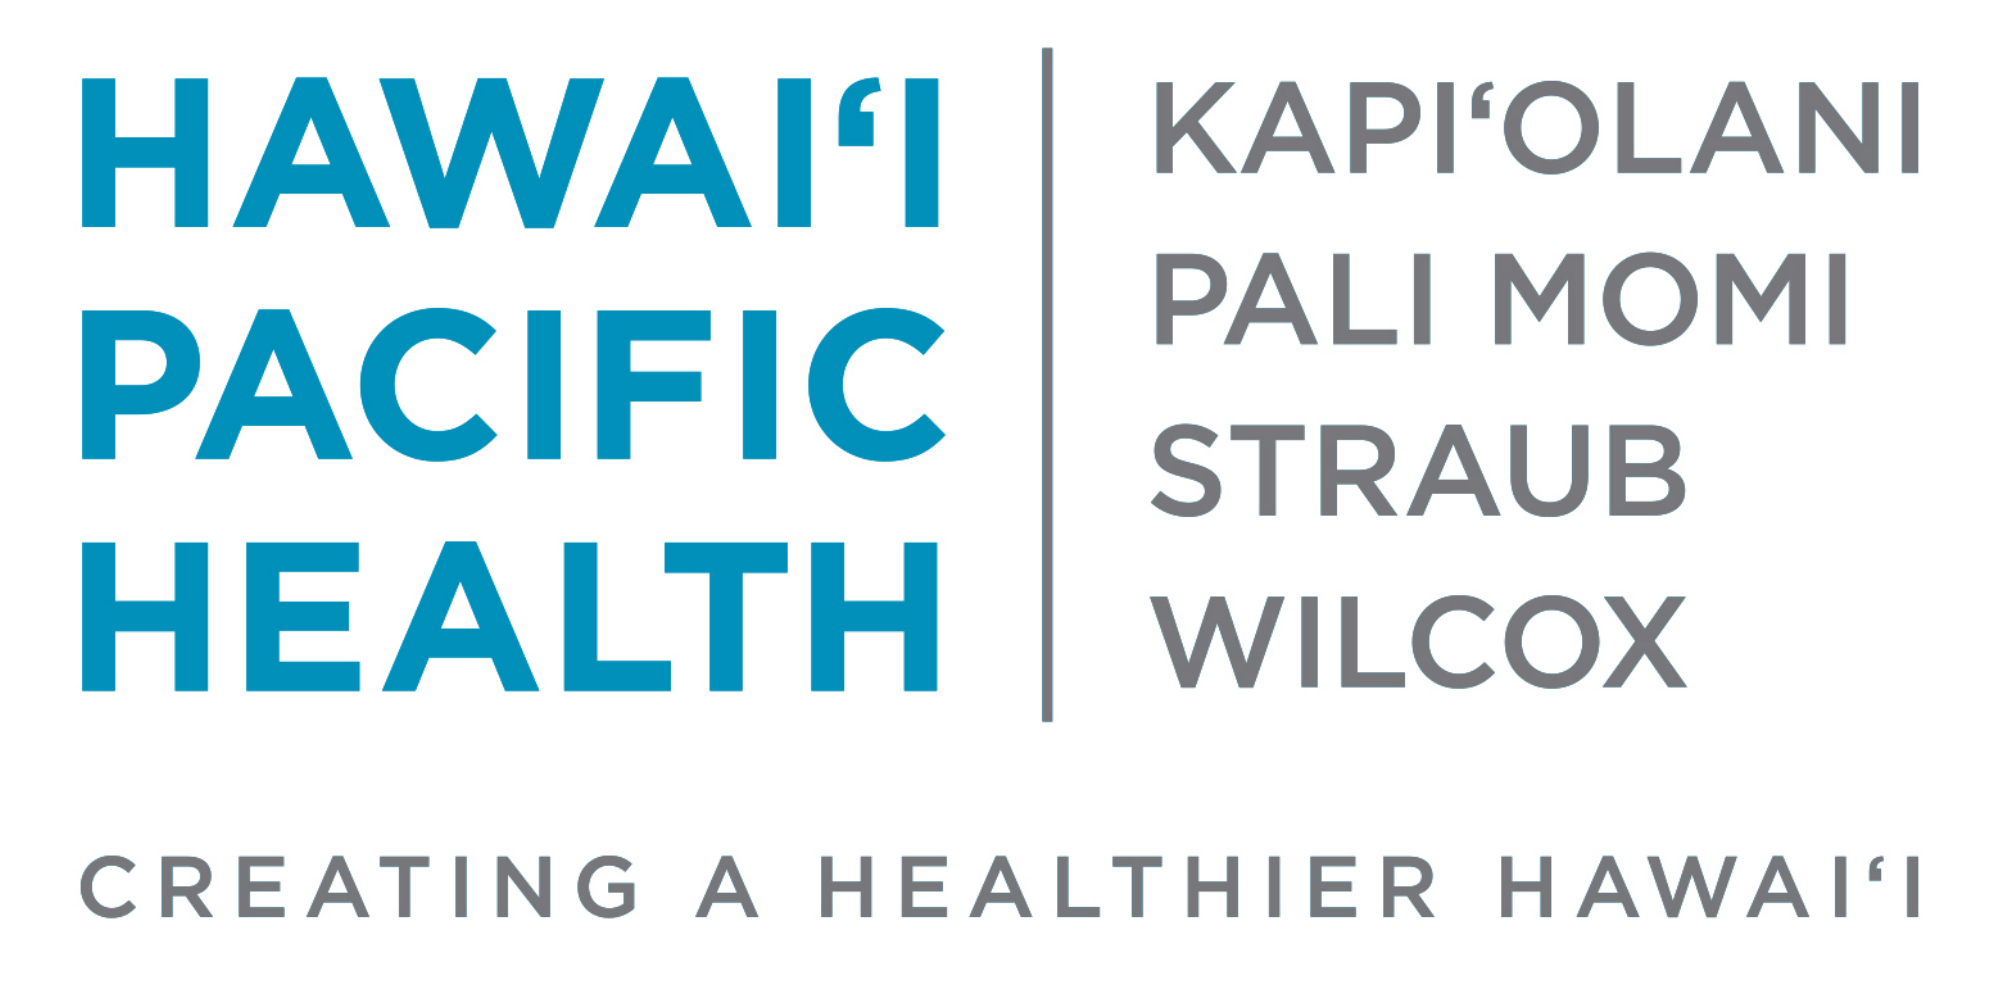 F - Hawaii Pacific Health